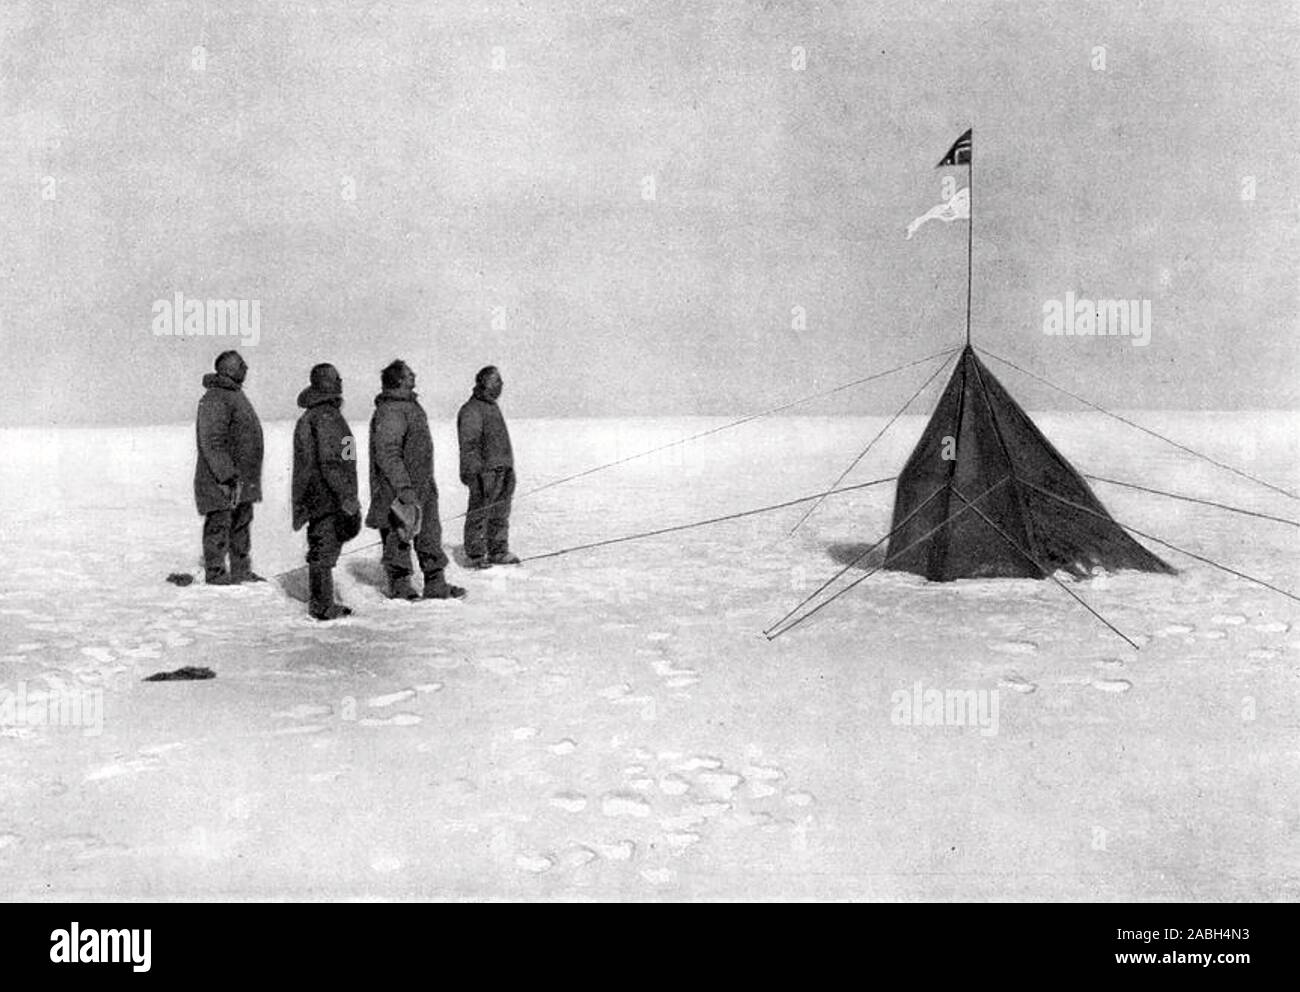 ROALD AMUNDSEN (1872-c 1928) explorateur polaire norvégien à 'Polheim" la tente érigée au Pôle Sud le 16 décembre 1911. De gauche à droite : Amundsen, Helmer Hanssen, Sverre Hassel, Oscar Wistling. Le drapeau norvégien fliesd au-dessus que de leur navire Fram Banque D'Images